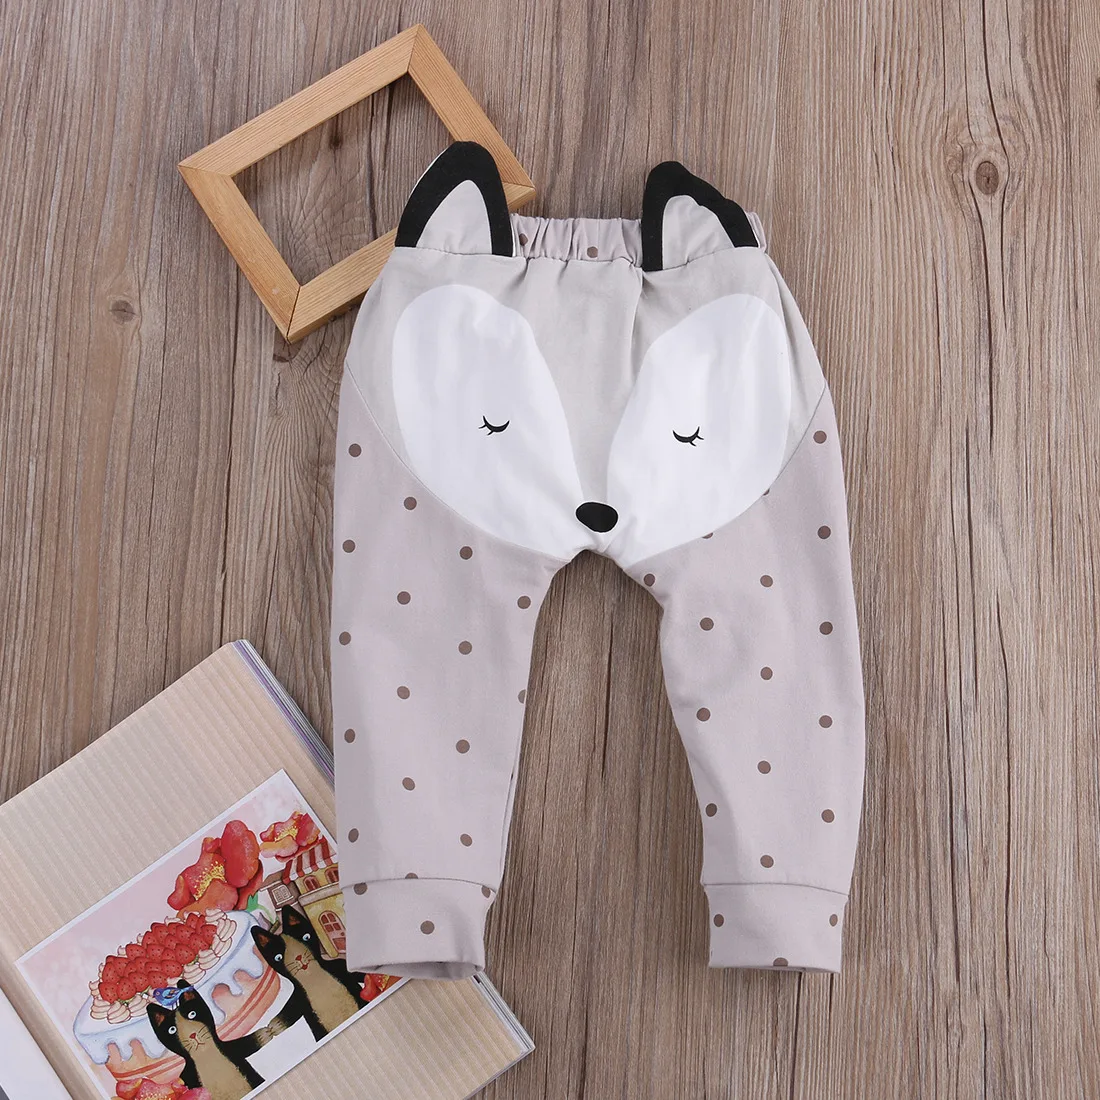 Повседневные штаны-шаровары в горошек с рисунком лисы и коричневого цвета для новорожденных мальчиков и девочек, леггинсы, брюки для детей от 0 до 24 месяцев